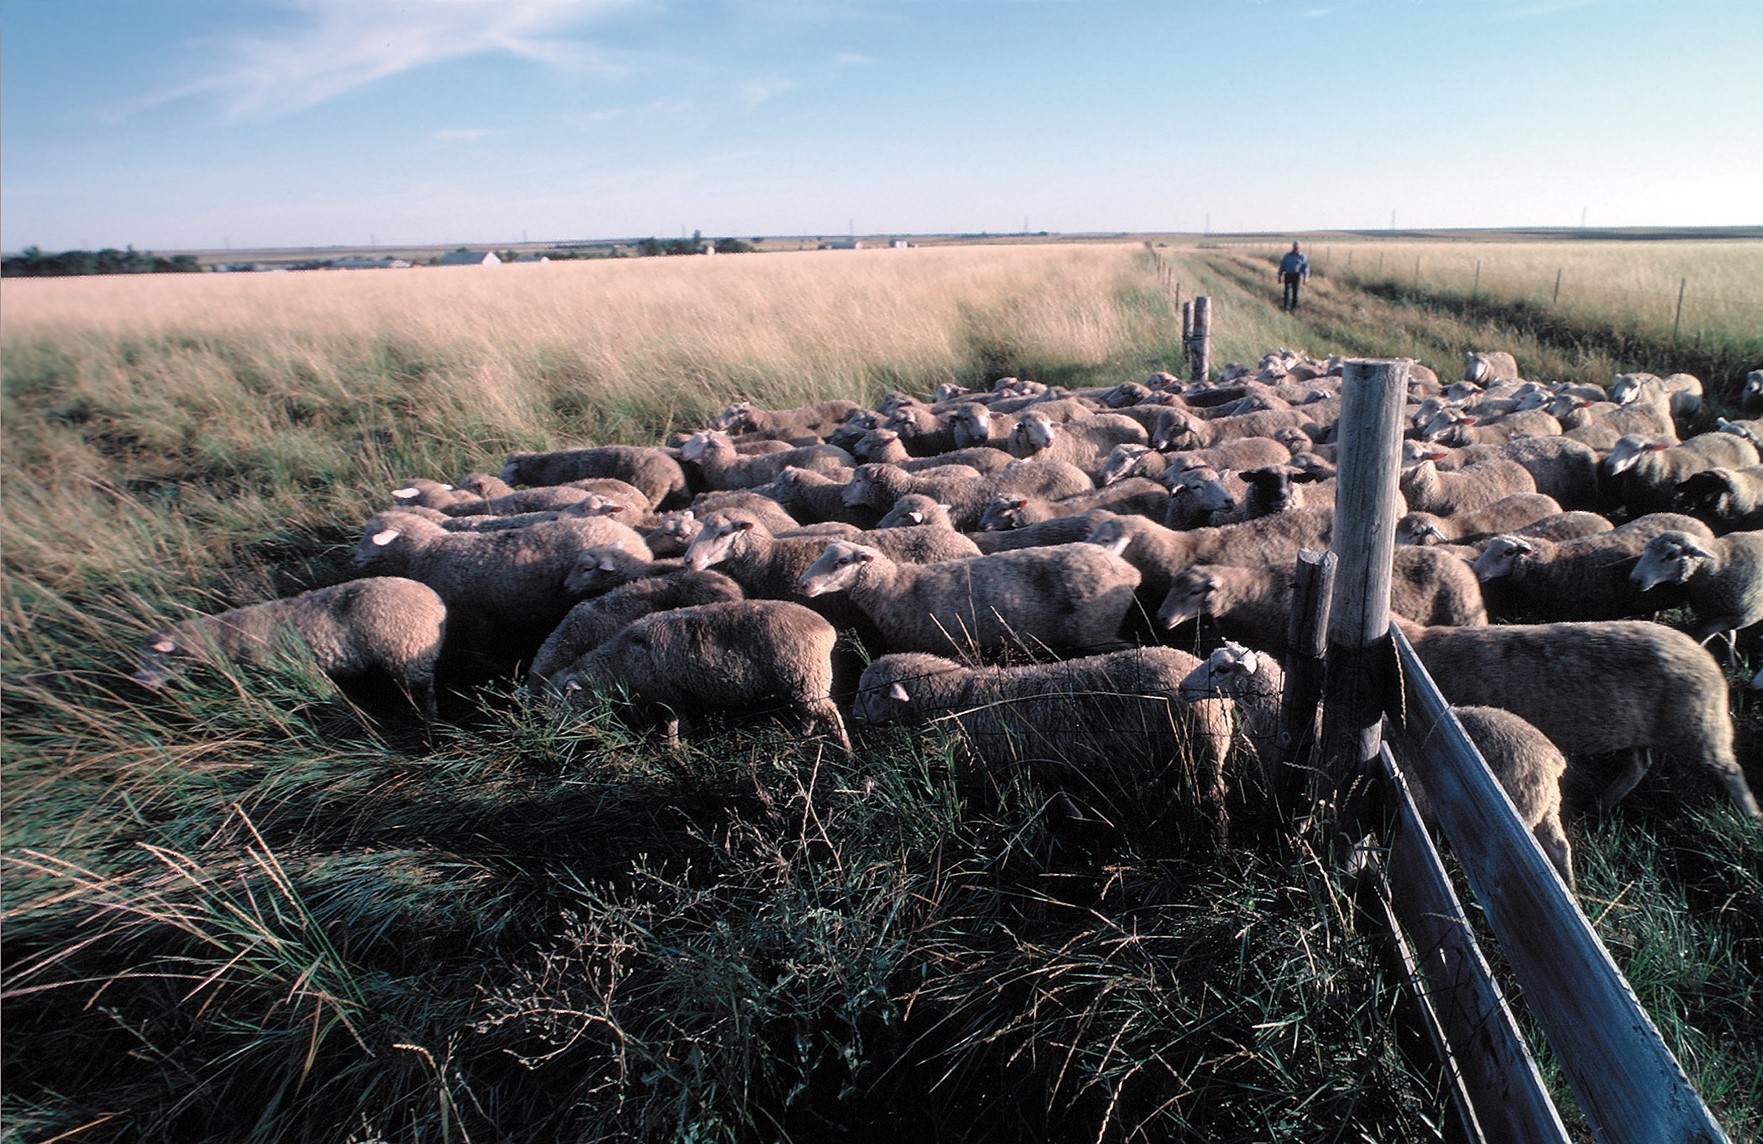 Sheep AMP grazing in South Dakota. USDA, NRCS, Image by Tim McCabe